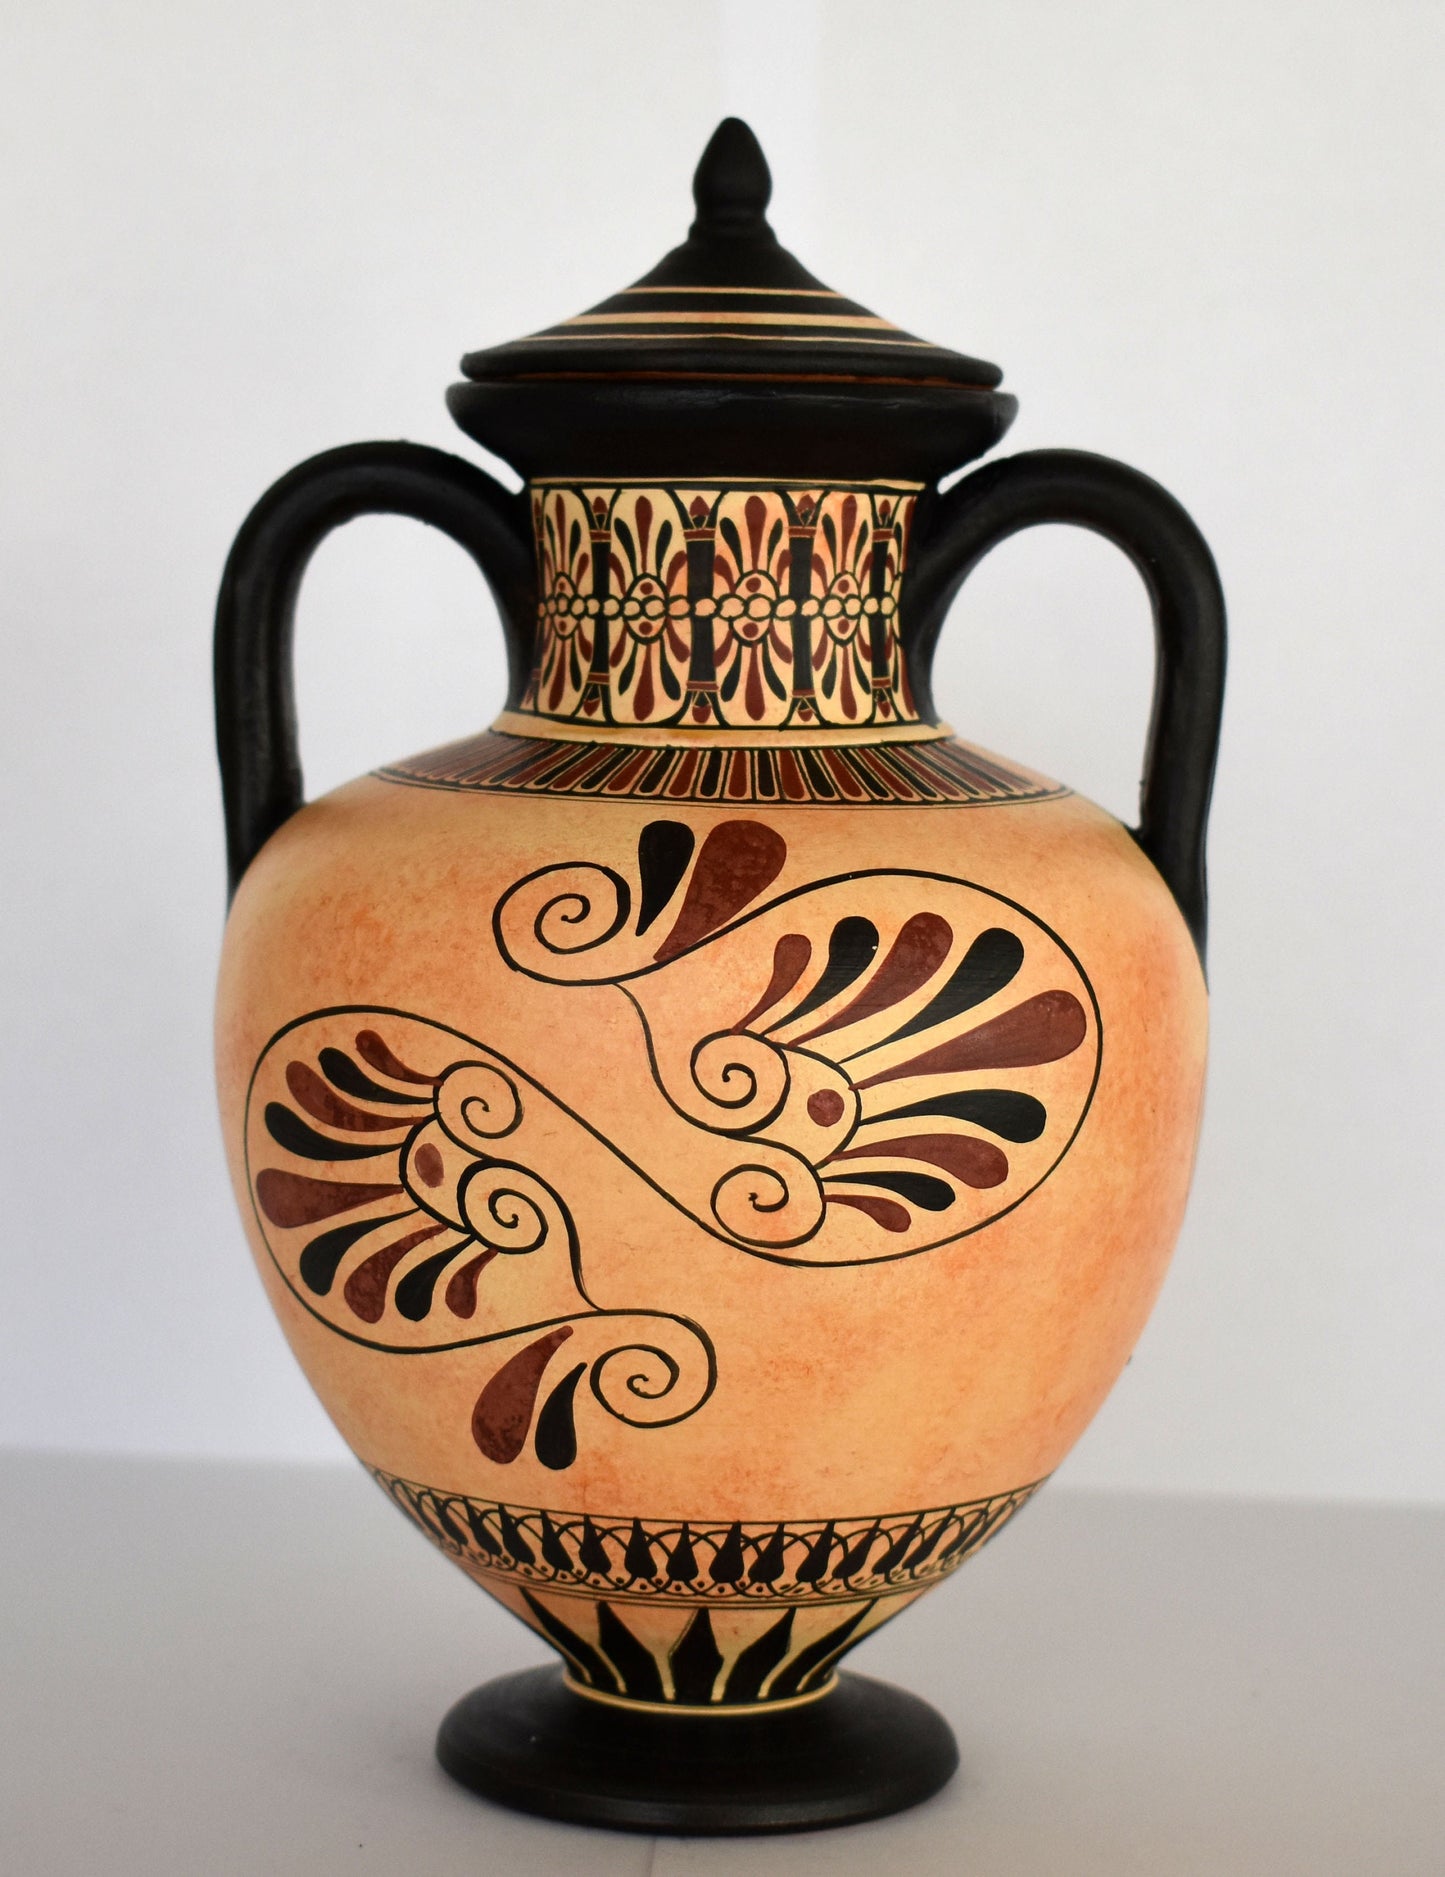 Achilles and Penthesileia, Amazonian Queen - Homer's Iliad - Floral Motif - Classic Period - 600 BC - Ceramic Vase